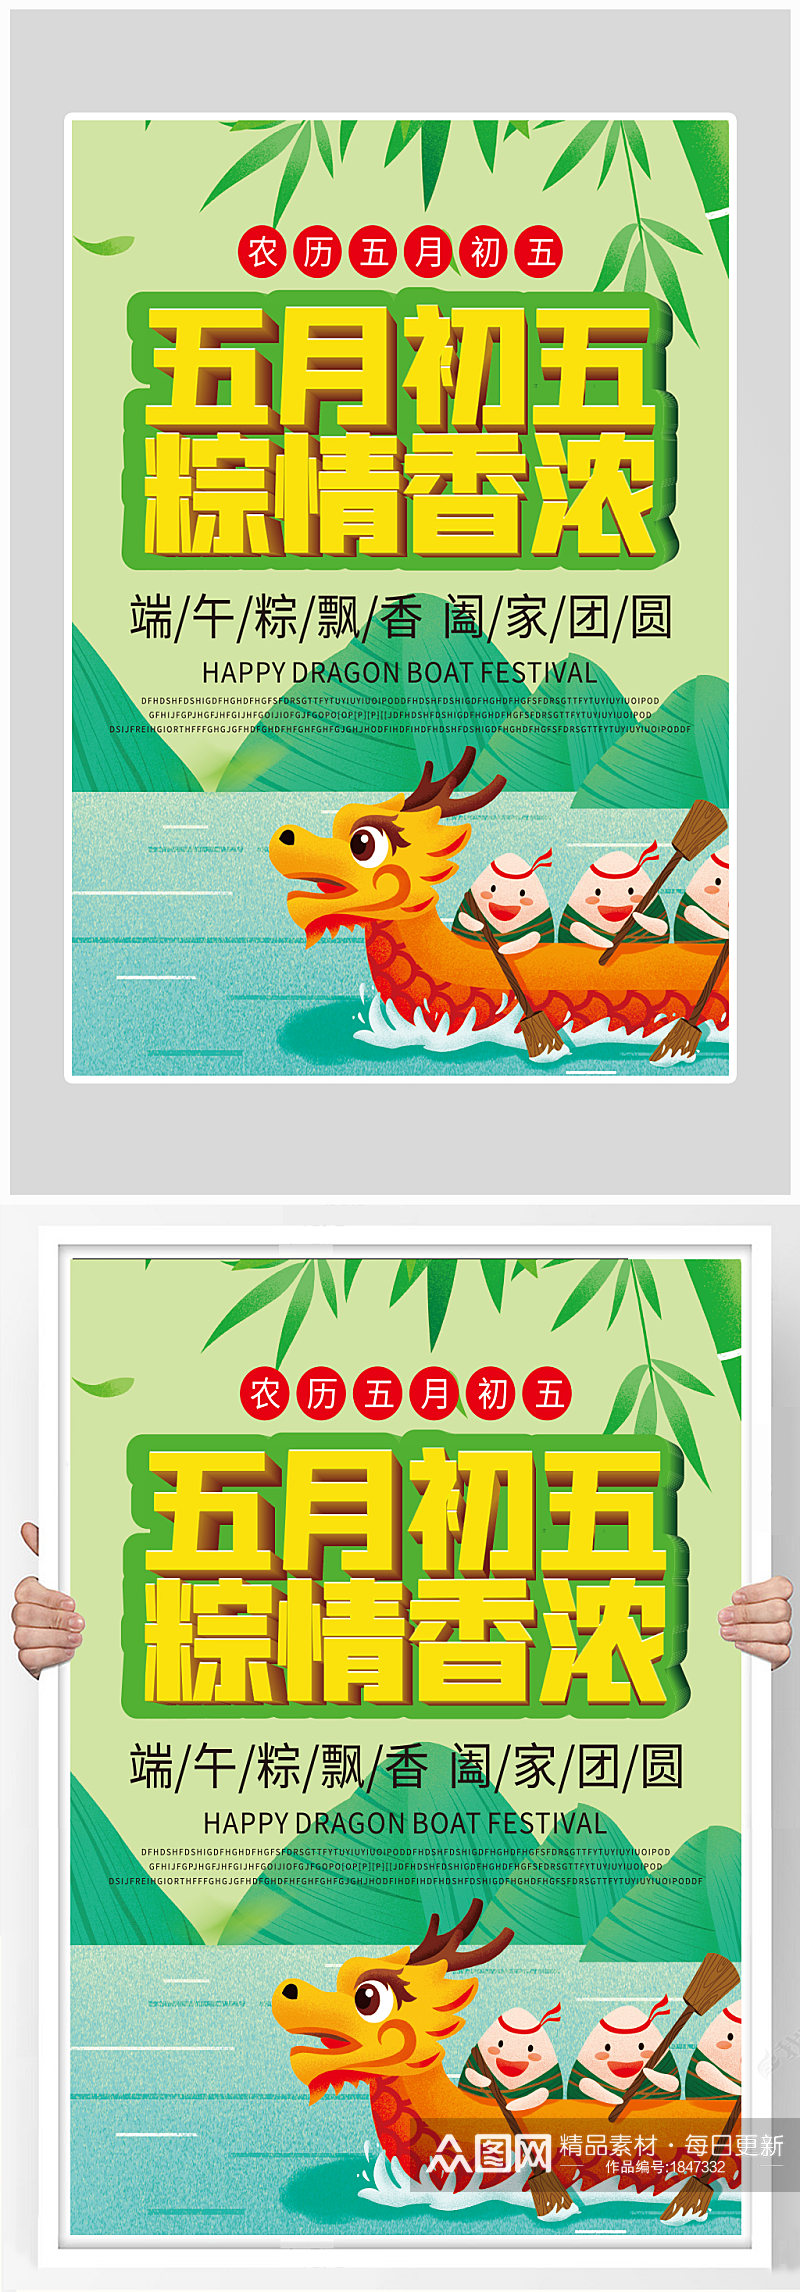 创意质感端午节赛龙舟吃粽子海报设计素材